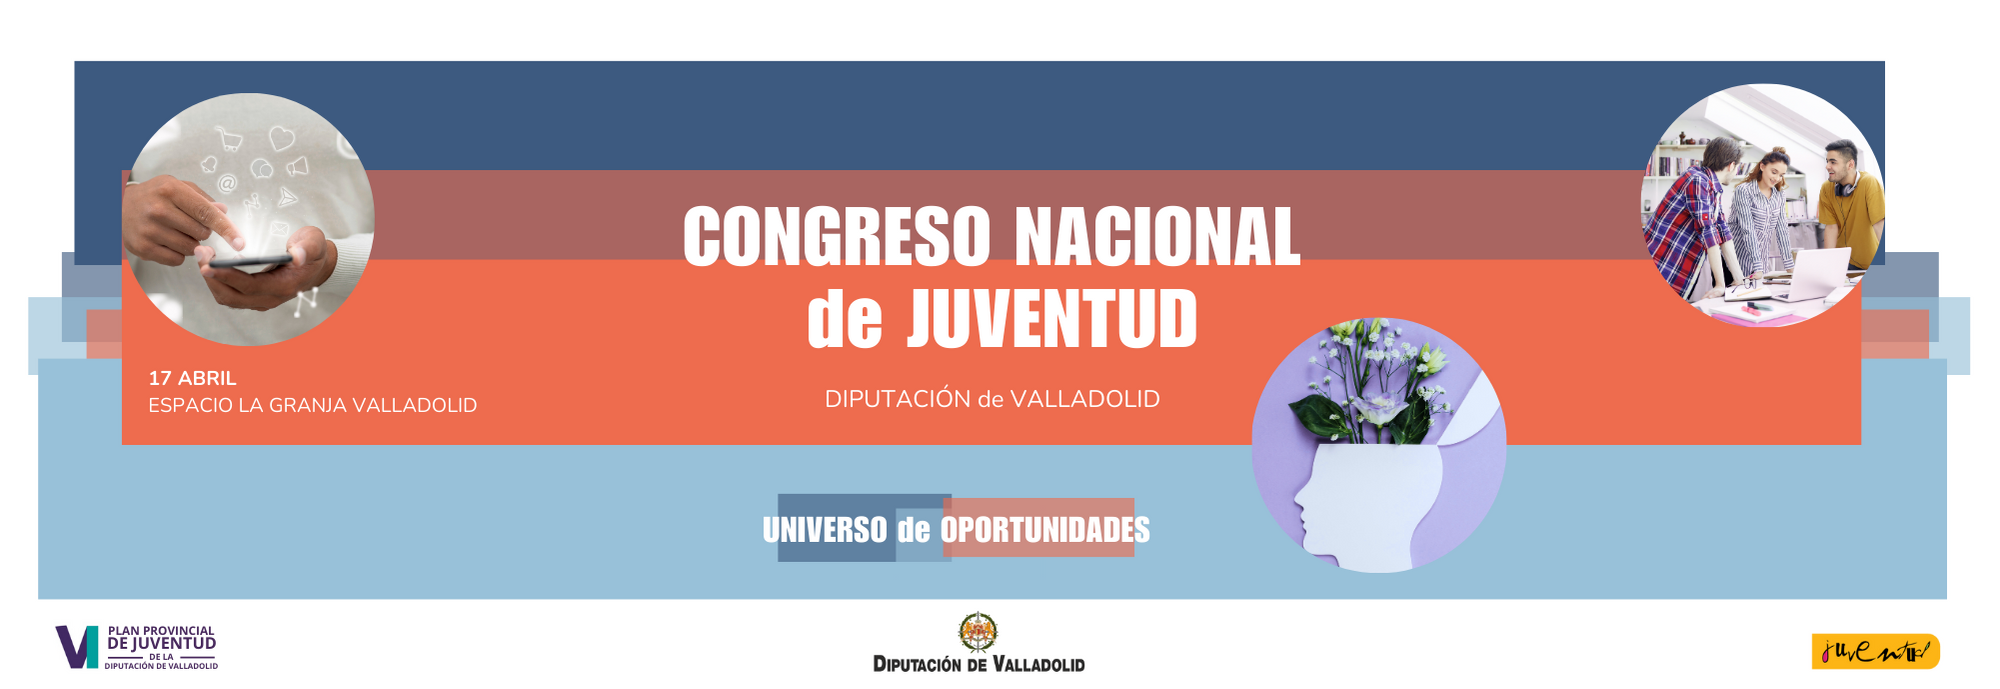 Congreso Nacional de Juventud